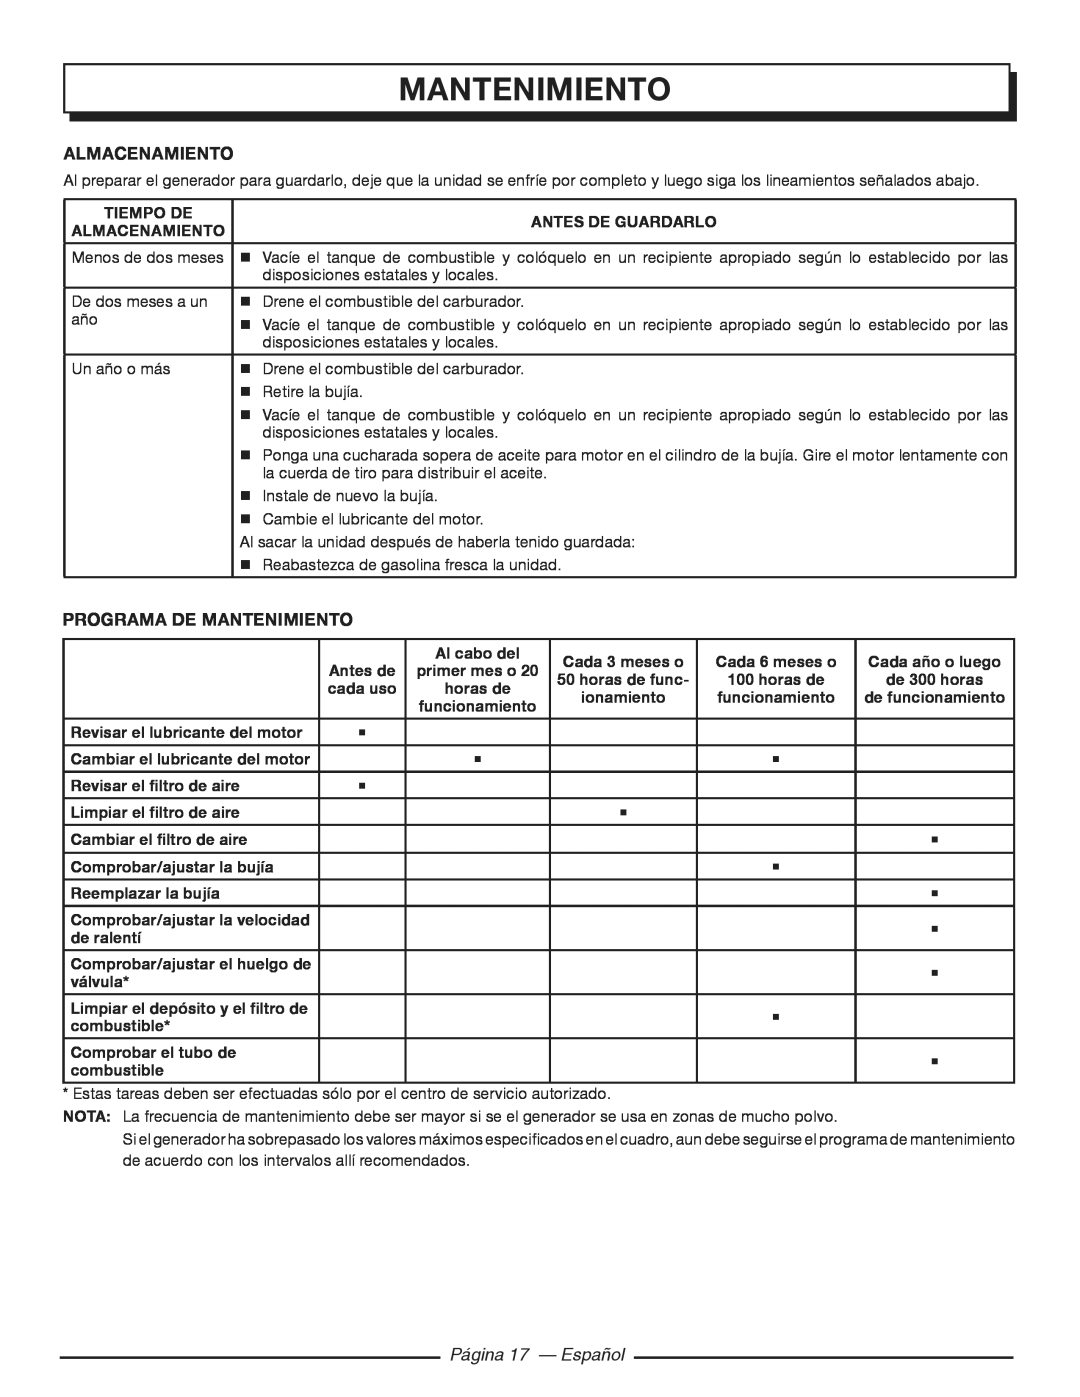 Homelite HGCA3000 manuel dutilisation almacenamiento, Programa De Mantenimiento, Página 17 - Español 